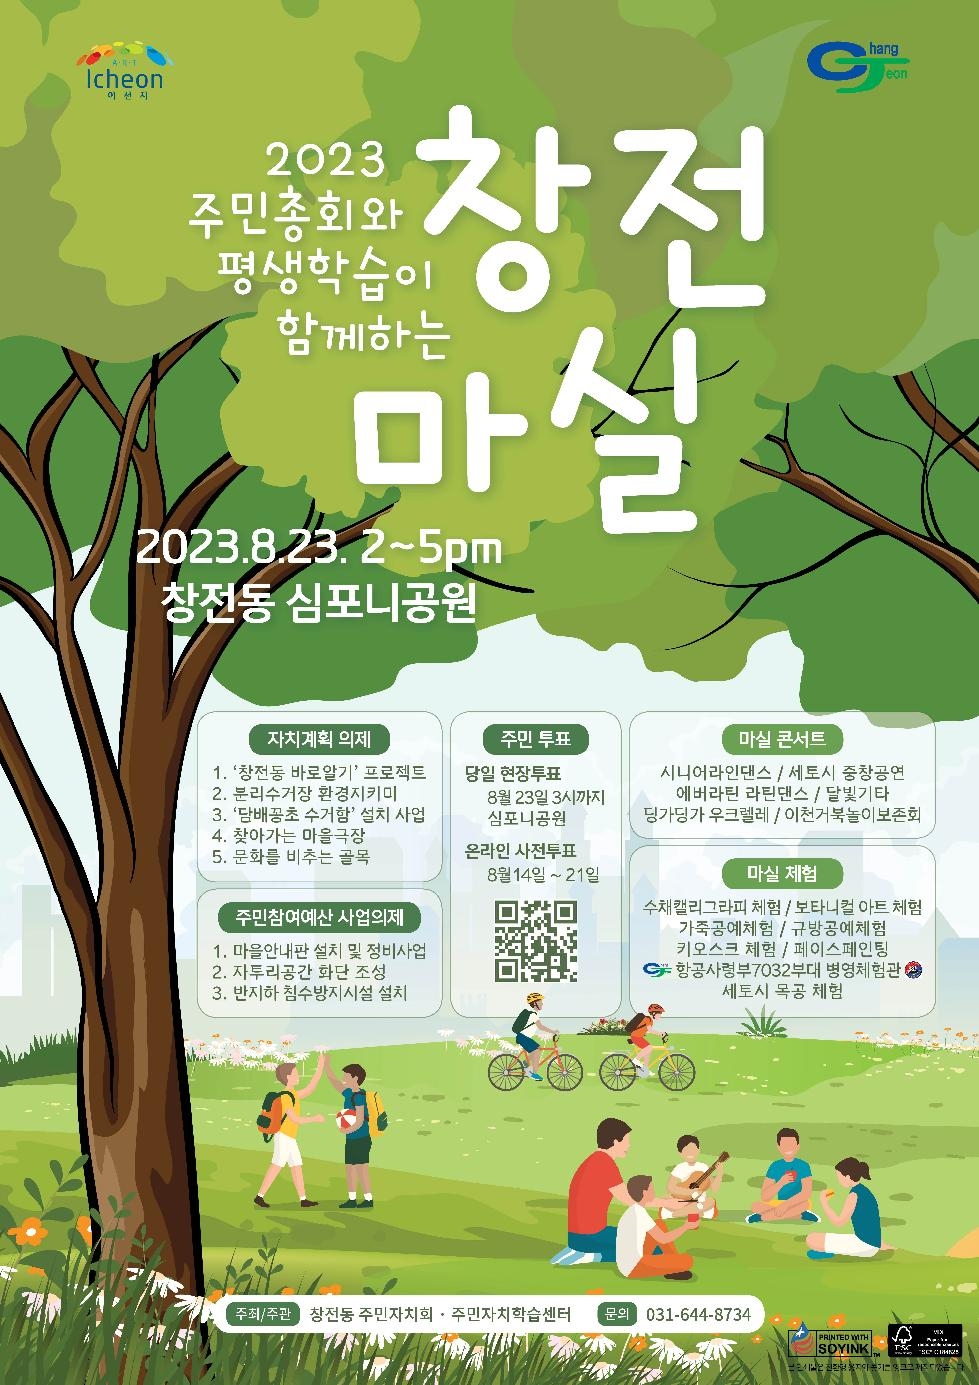 이천시 창전동 주민자치회, 오는 23일 주민총회 개최